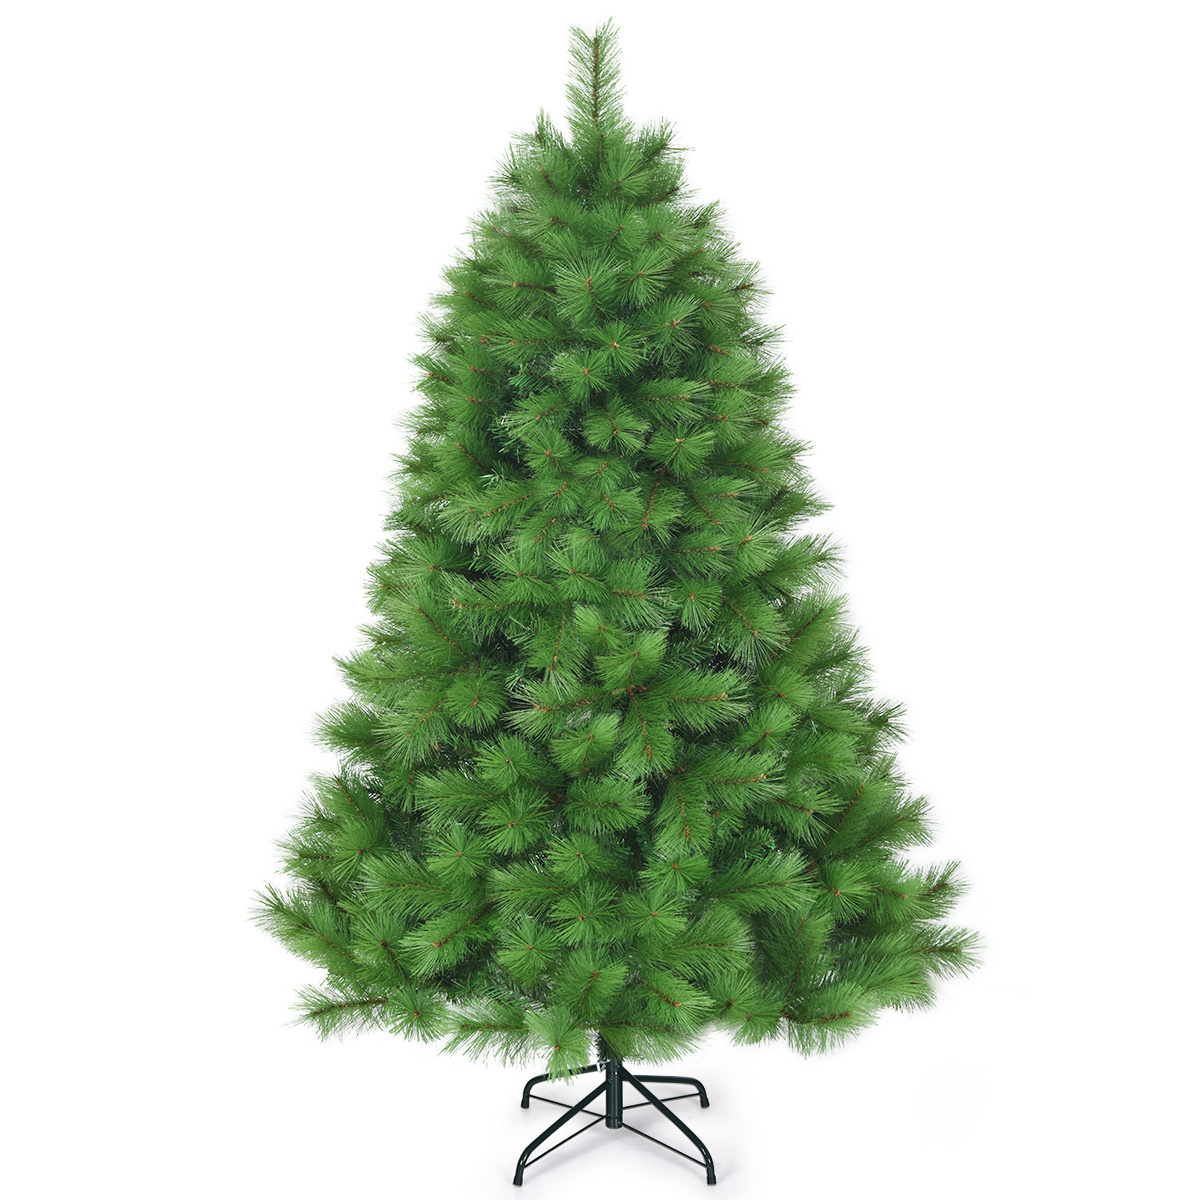 Coast günstig Kaufen-Coast 180 cm künstlicher Weihnachtsbaum Weihnachtsbaum pvc Nadeln künstlicher Baum mit Metallständer grün. Coast 180 cm künstlicher Weihnachtsbaum Weihnachtsbaum pvc Nadeln künstlicher Baum mit Metallständer grün <!